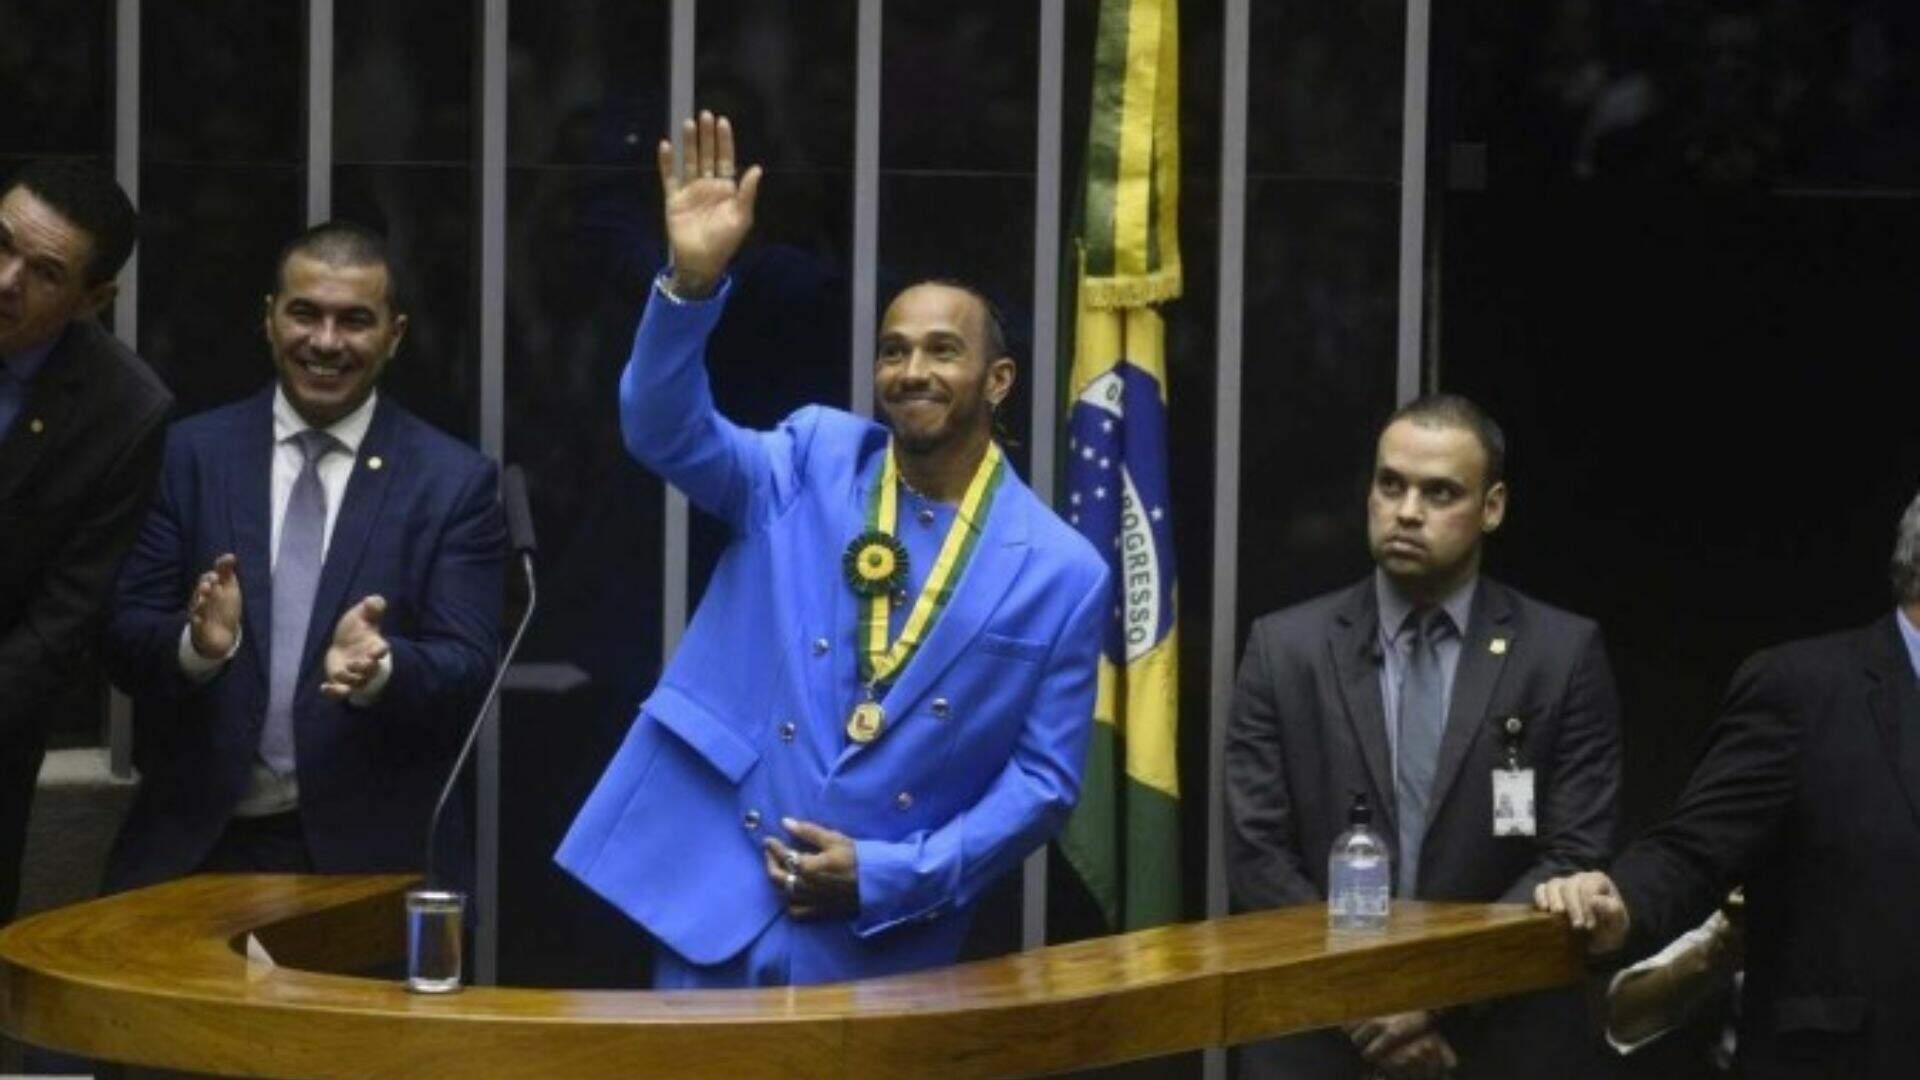 Lewis Hamilton recebe título de cidadão honorário do Brasil - Metropolitana FM